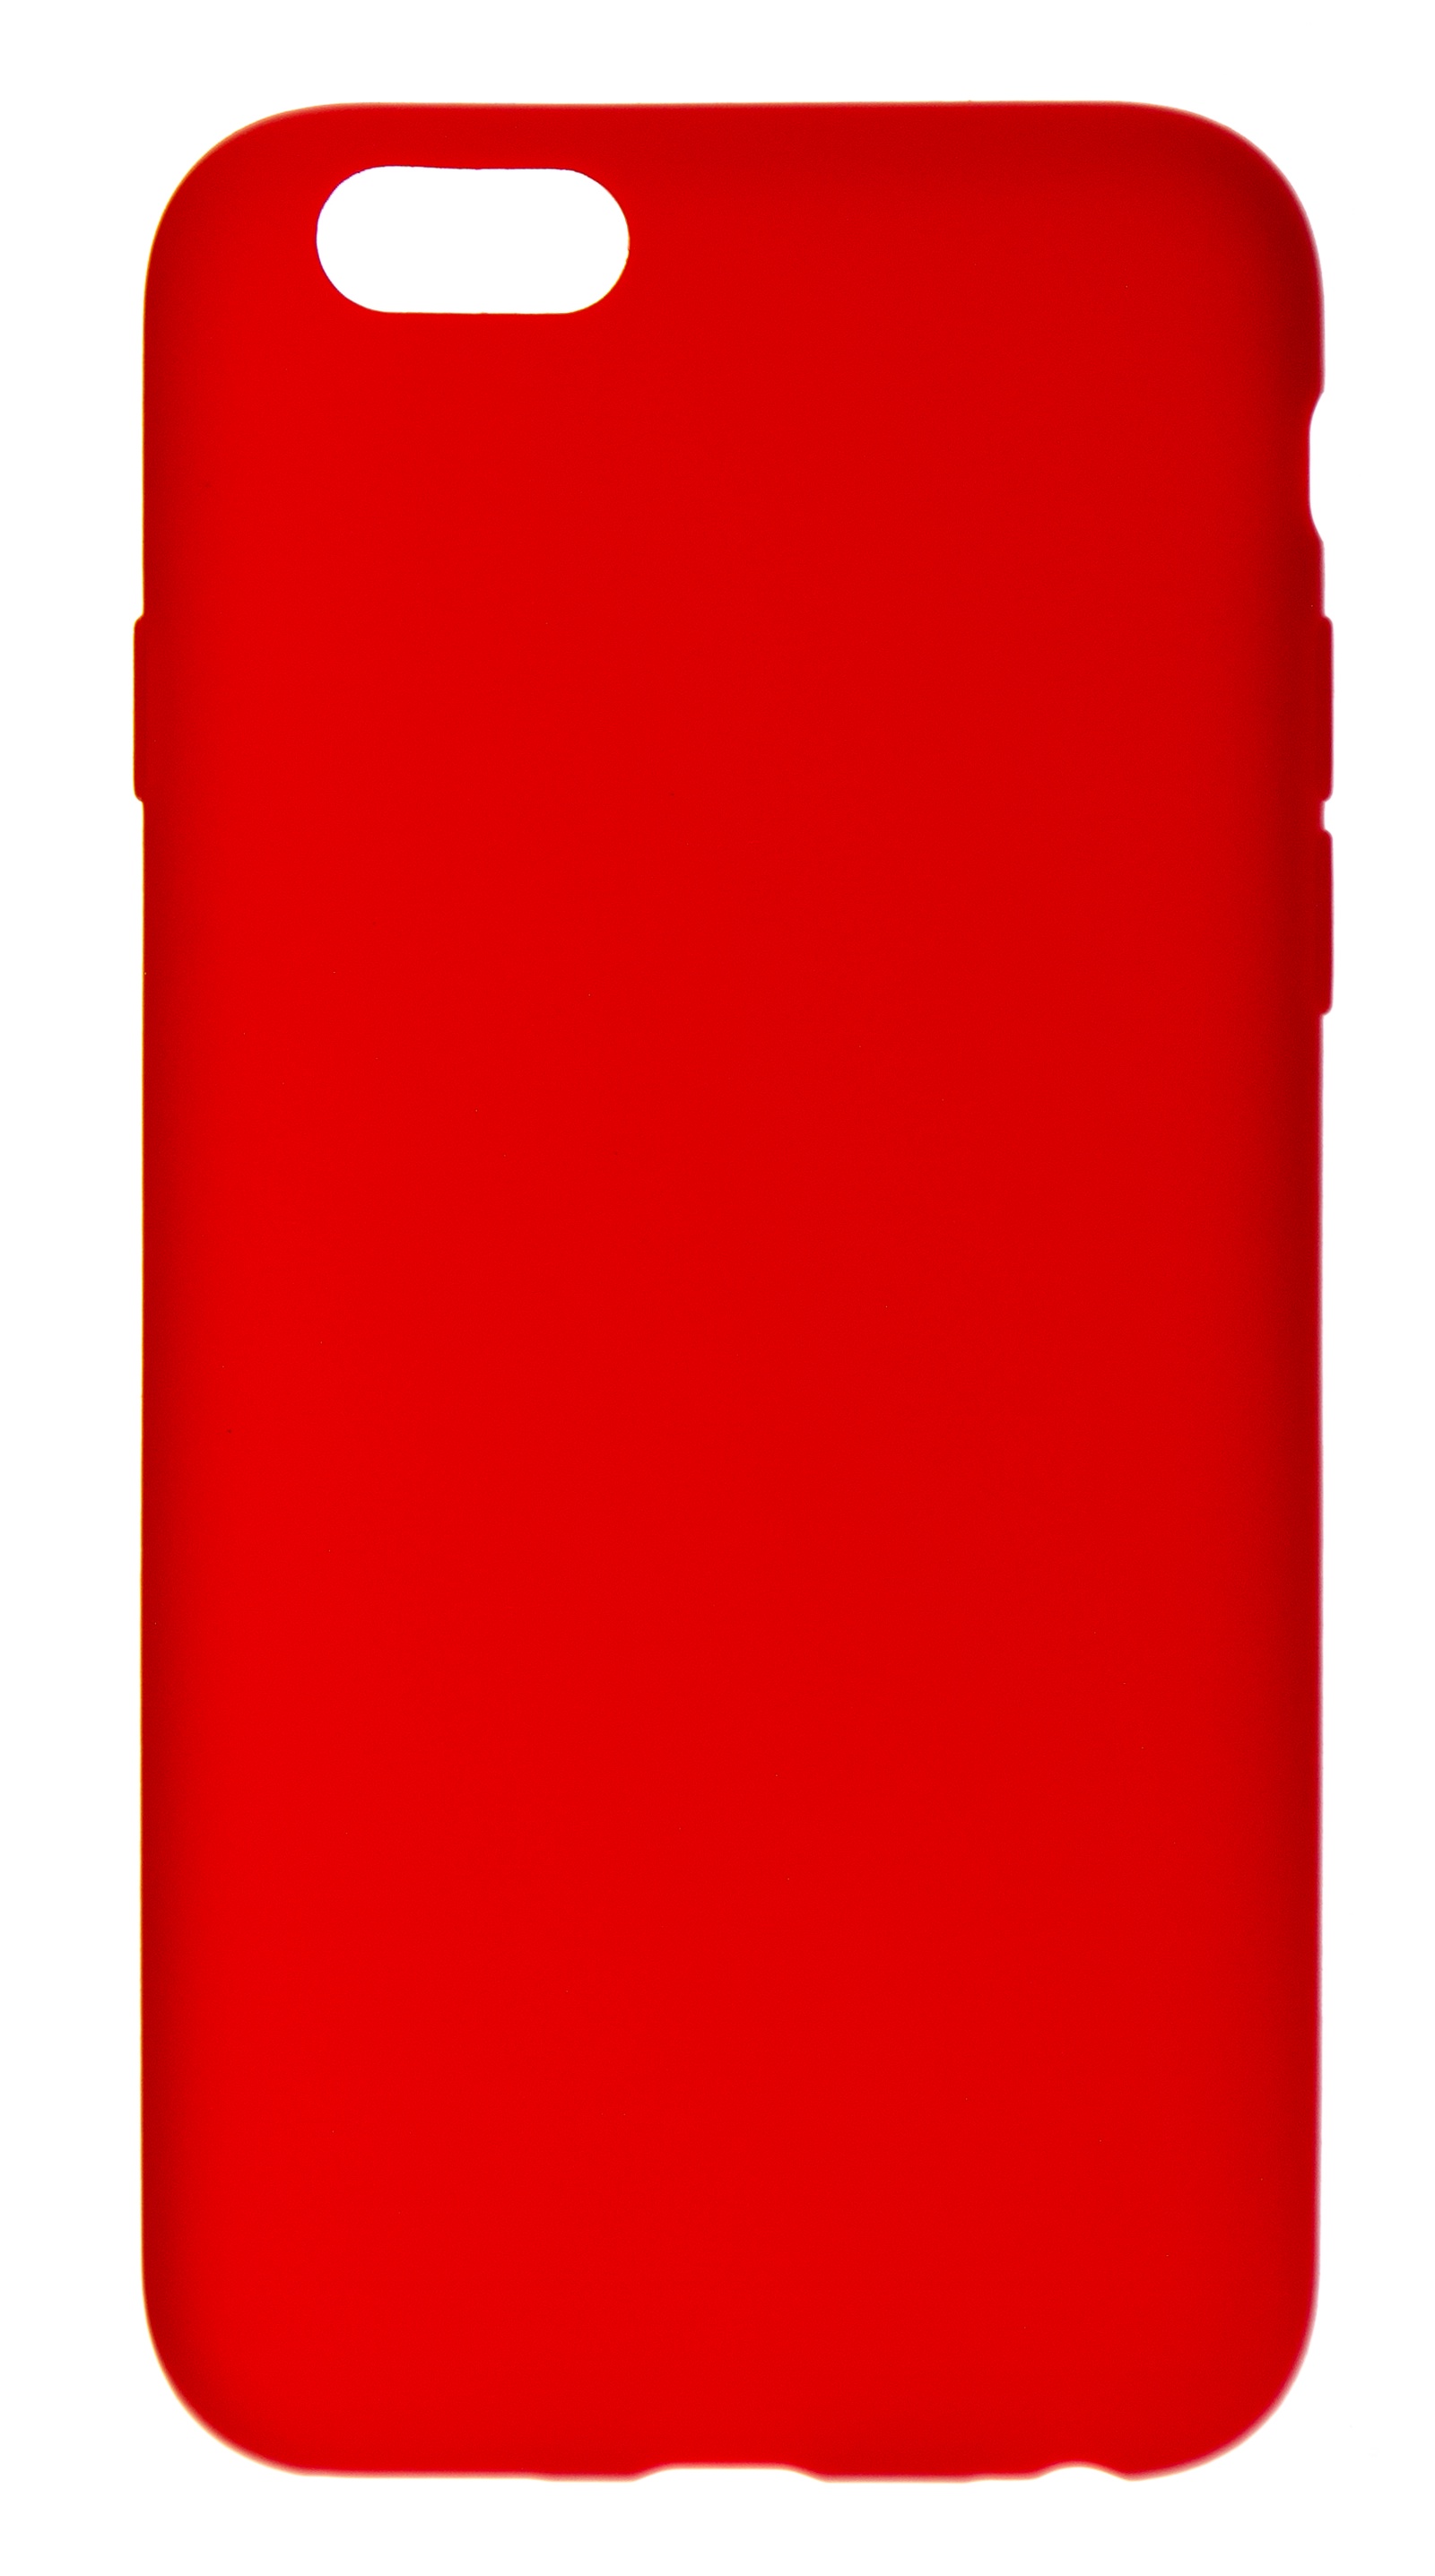 Красный чехол для телефона. Красный чехол. Красный айфон в чехле. Красный чехол на айфон 6. Красный чехол на айфон 6s.